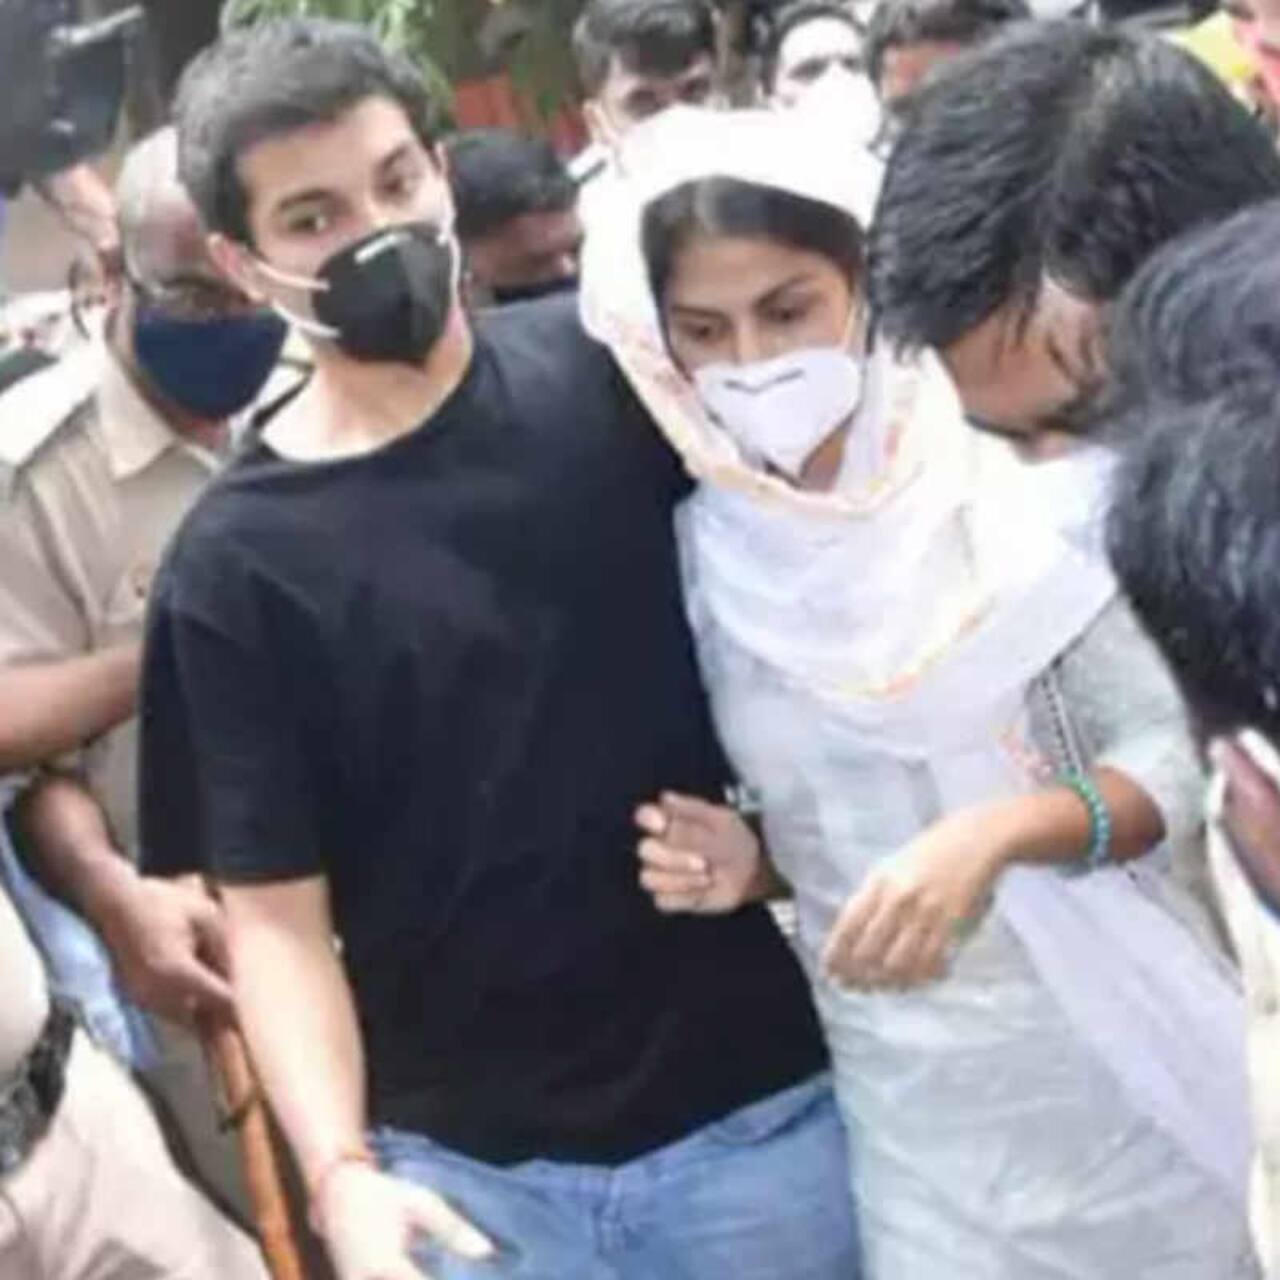 रिया चक्रवर्ती और उनके भाई की जमानत याचिका पर खत्म हुई सुनवाई, ड्रग्स मामले में मुंबई हाई कोर्ट ने सुरक्षित किया फैसला